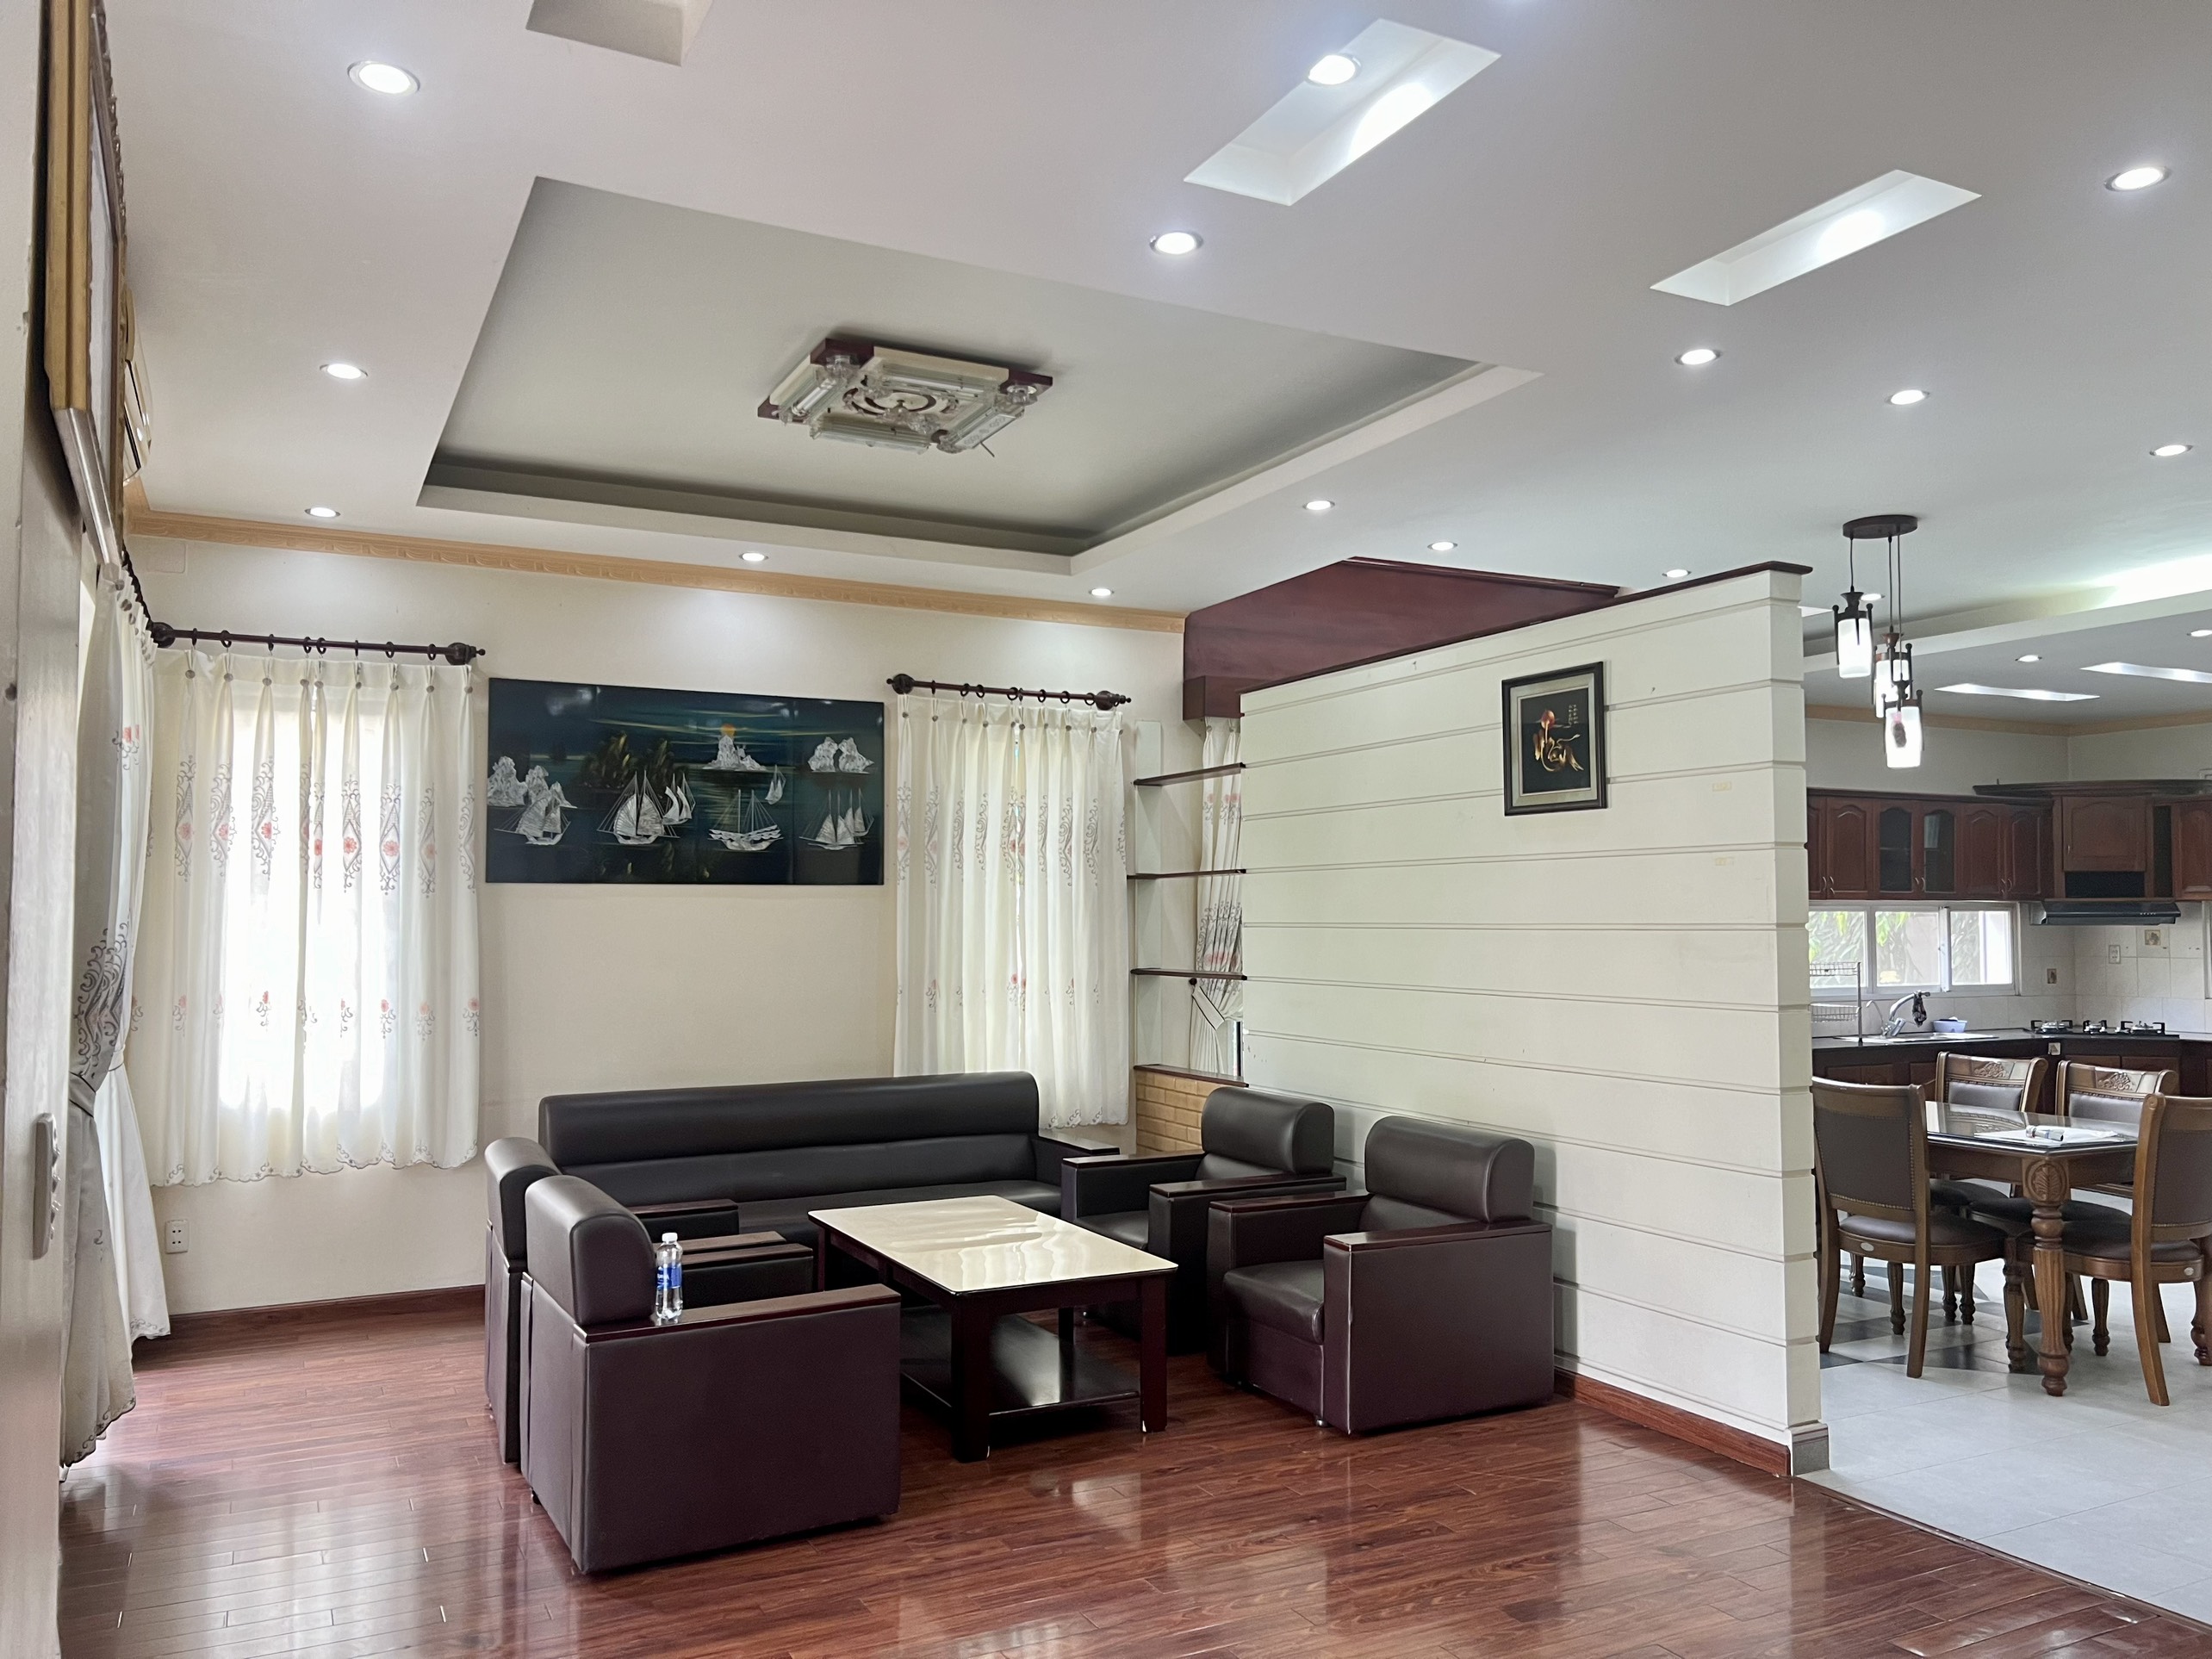 Cho thuê căn biệt thự vườn, nội thất hiện đại tại làng chuyên gia The Oasis, Thuận An, Bình Dương - Ảnh 2